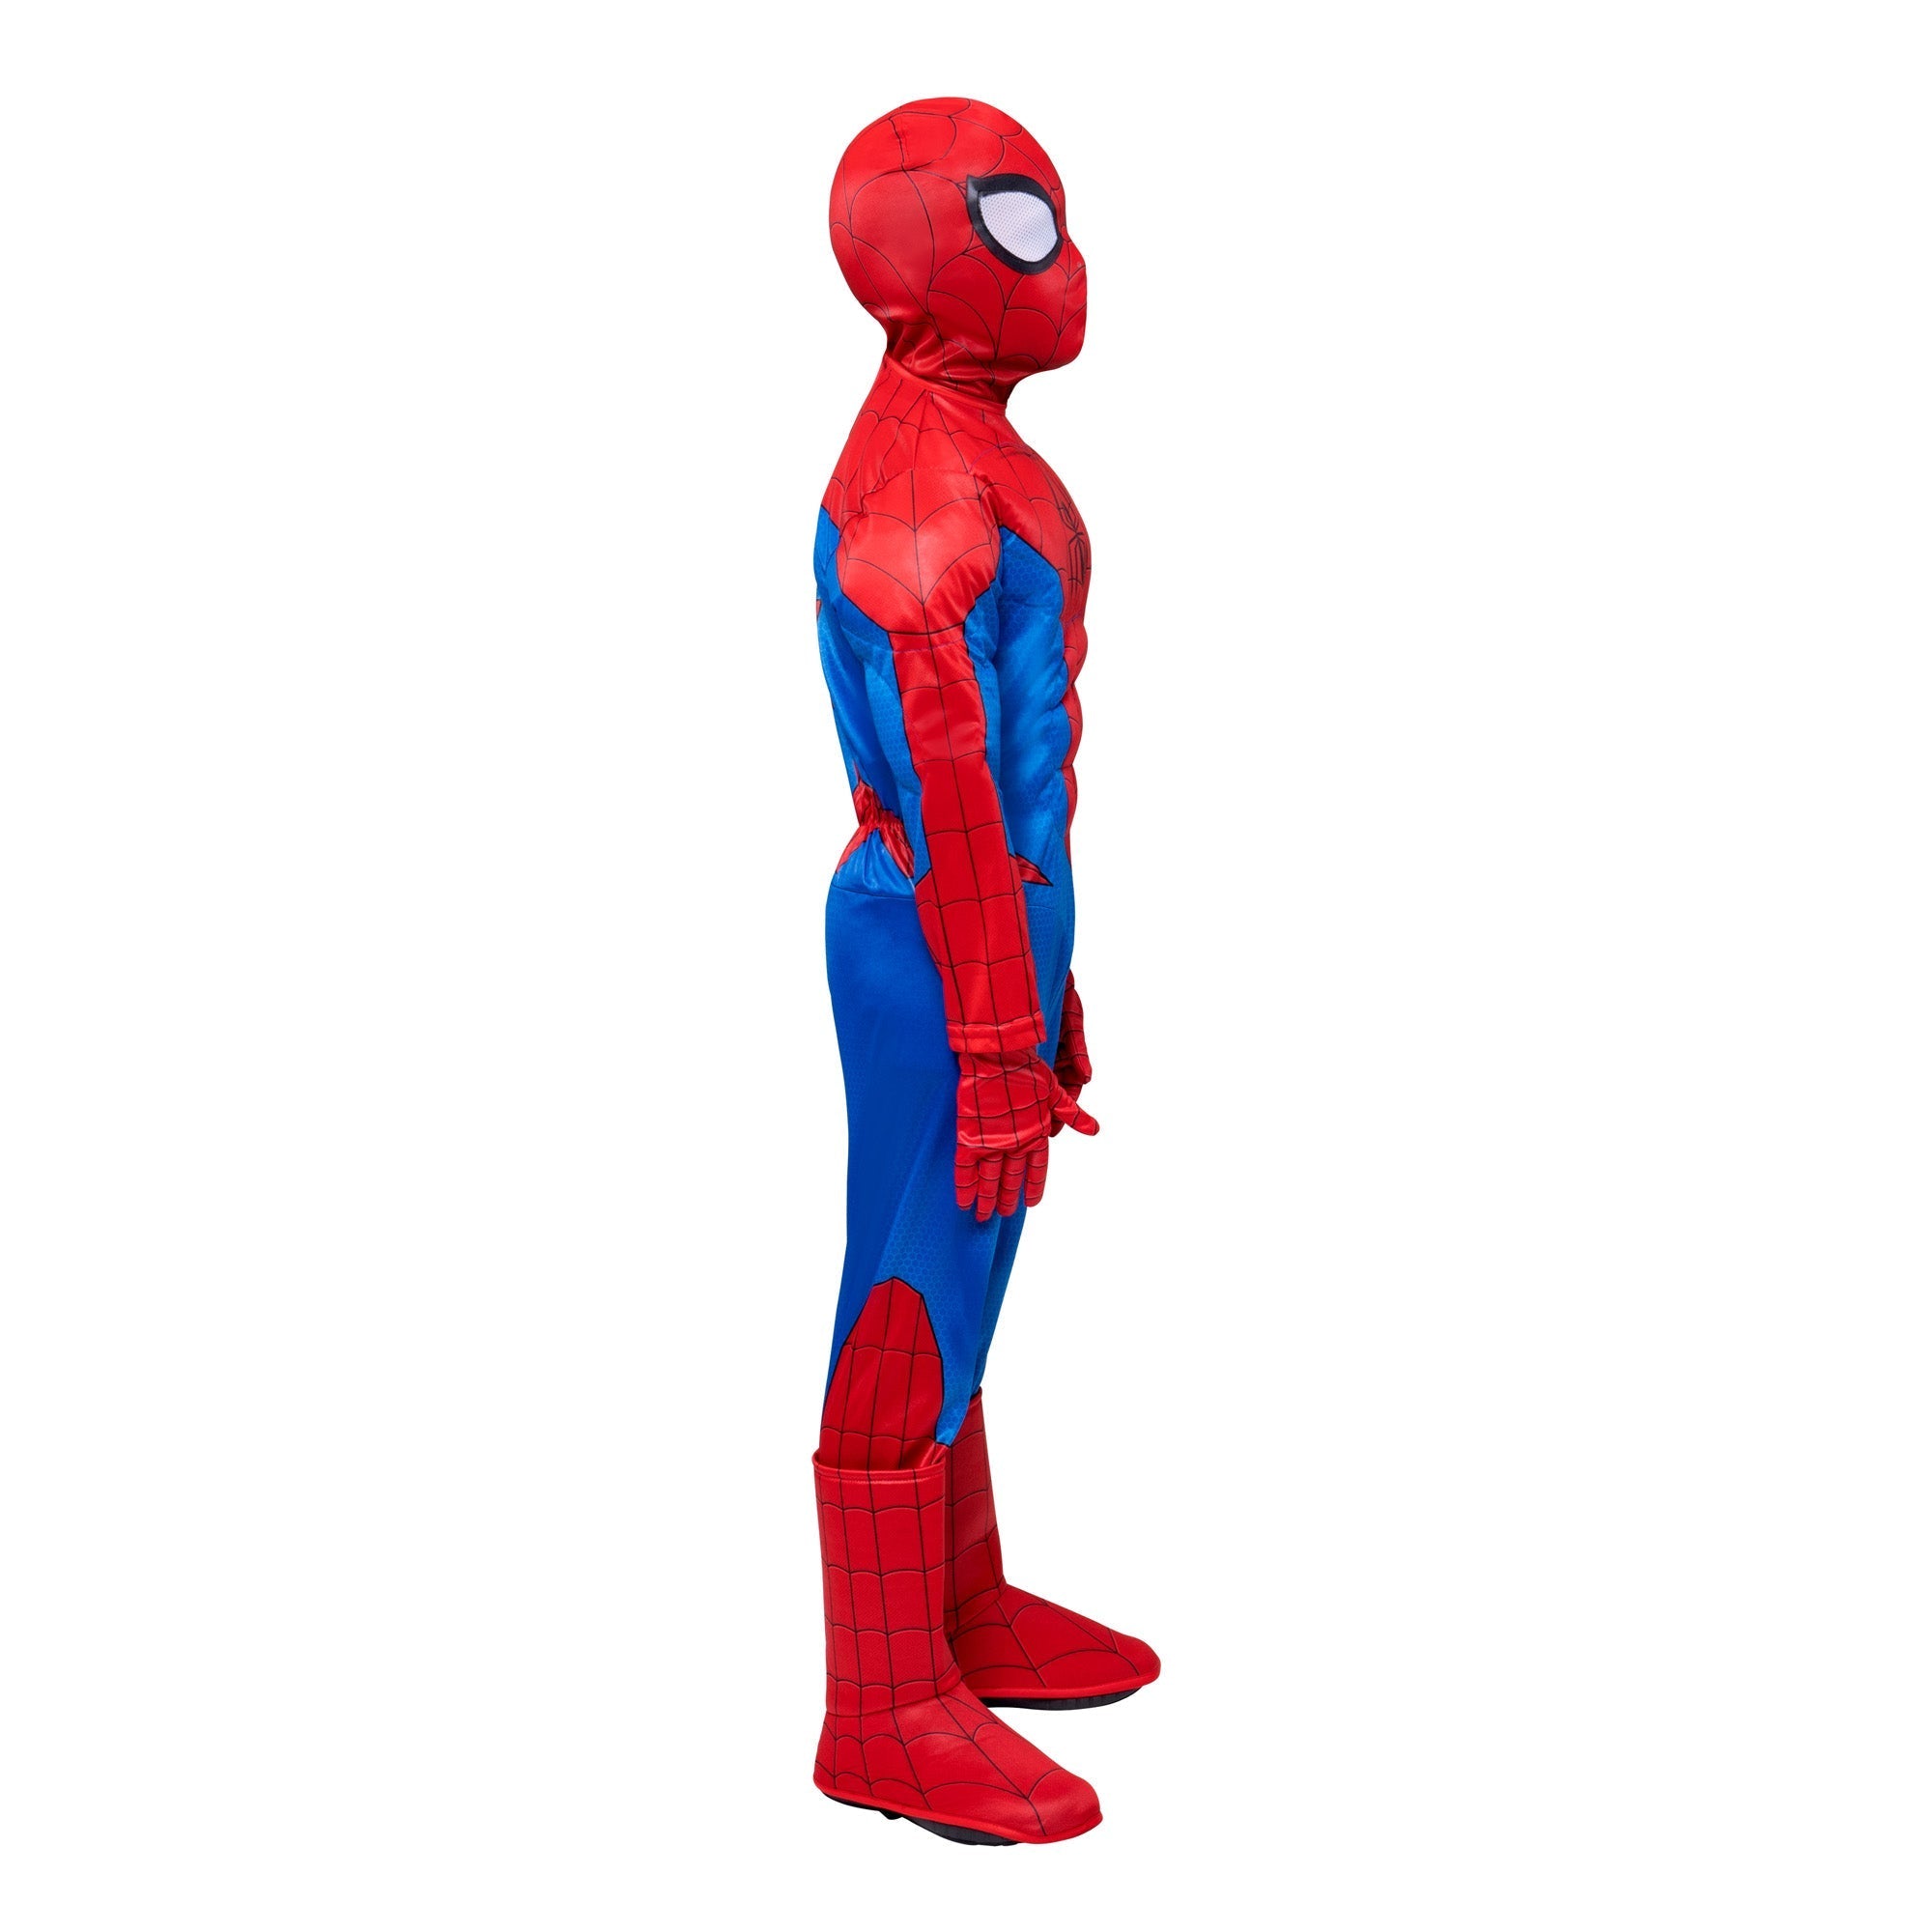 Costume de Miles Morales pour enfants, Marvel Spider-Man, combinaison  musclée noir et rouge